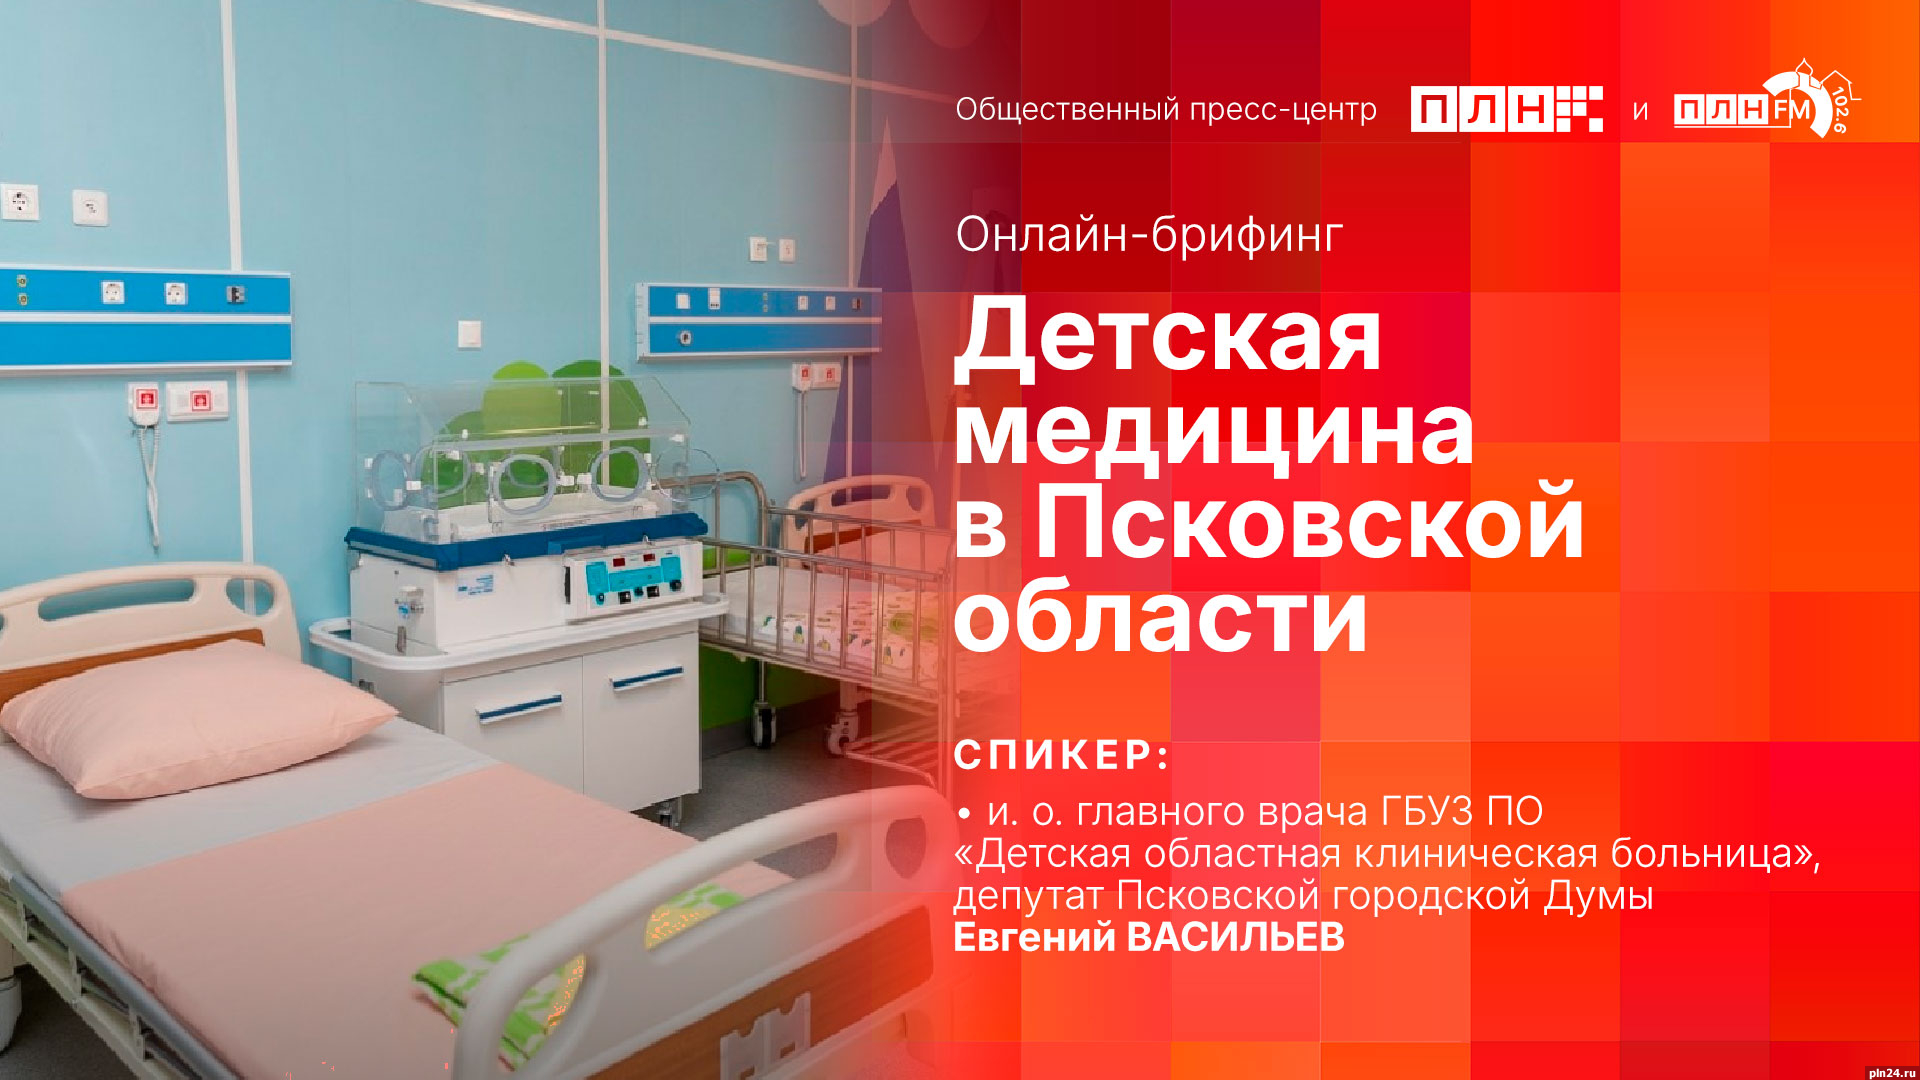 Ситуация в сфере детской медицины в Псковской области станет темой брифинга в пресс-центре ПЛН 